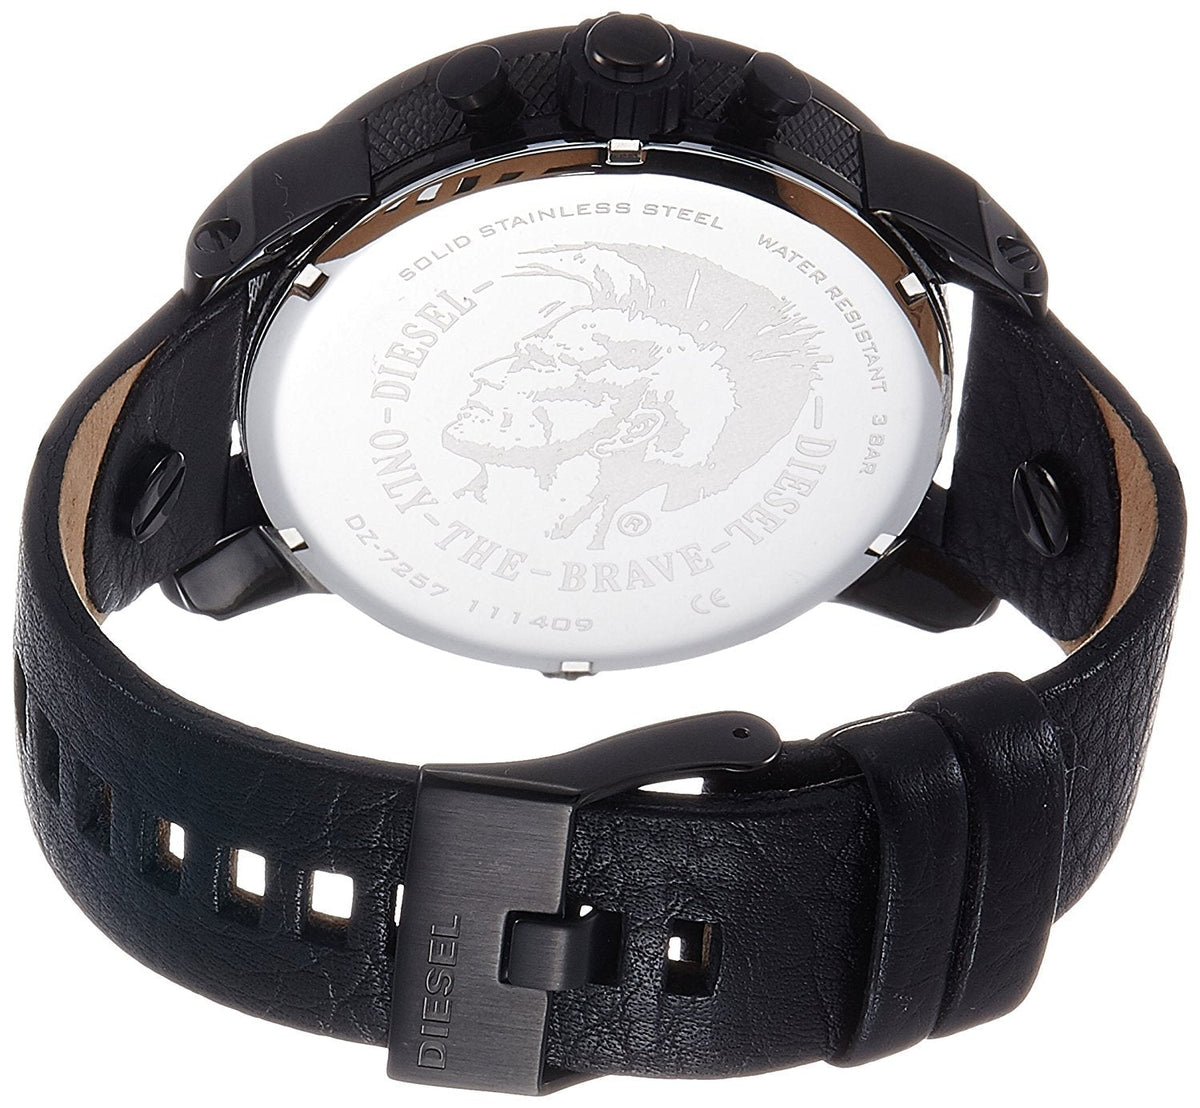 Diesel Mens Dz7257 Leather Black Watch